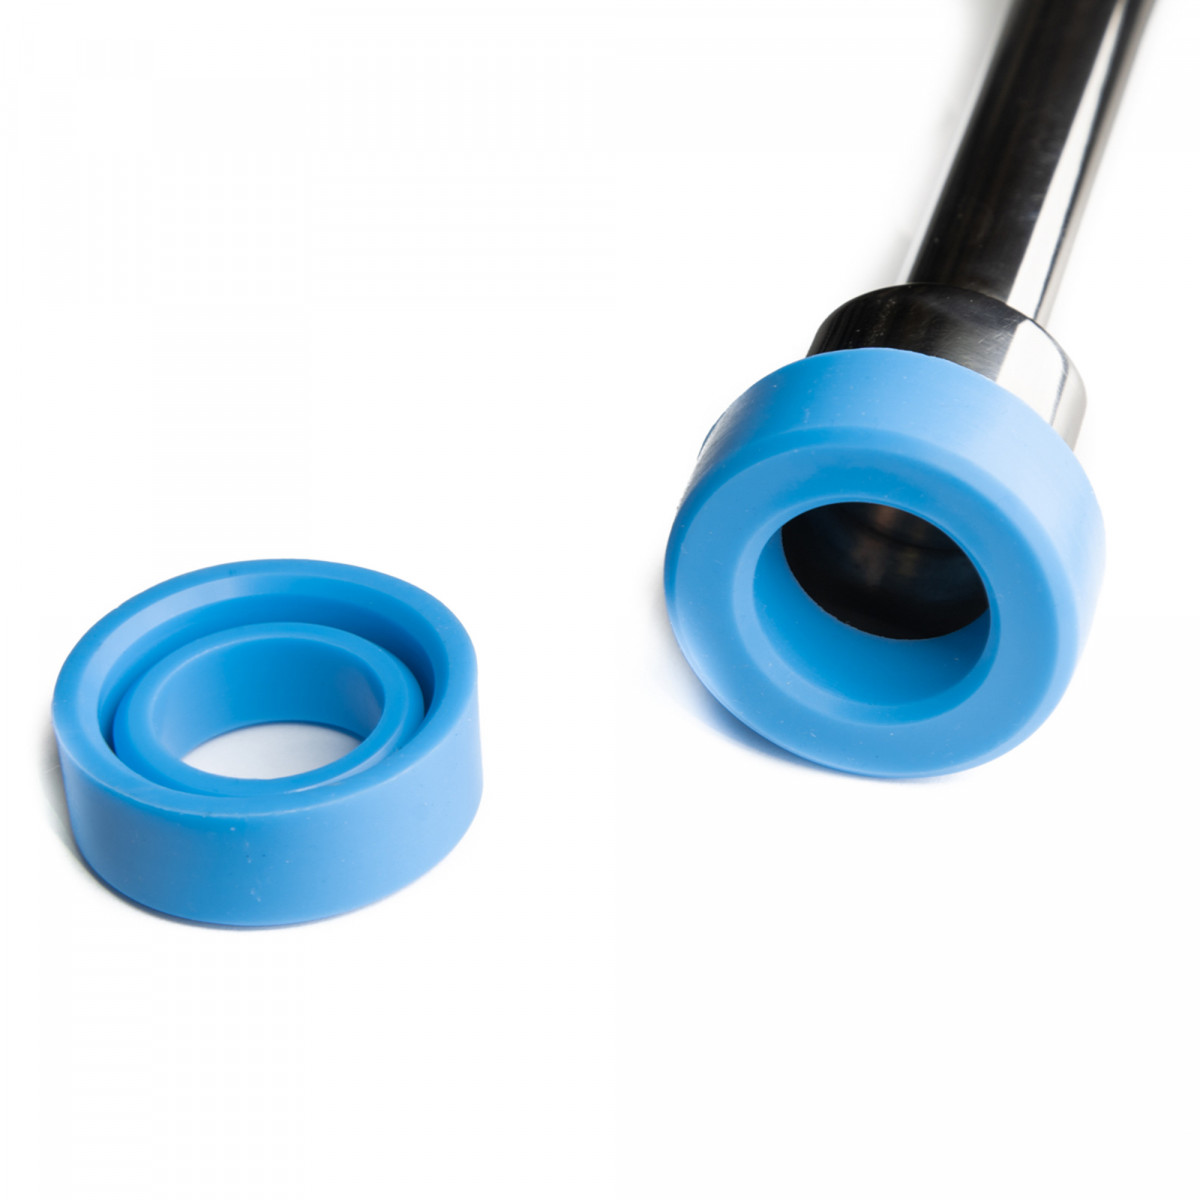 Brewtools joint en silicone pour partie supérieure du tuyau d'aspersion, bleu